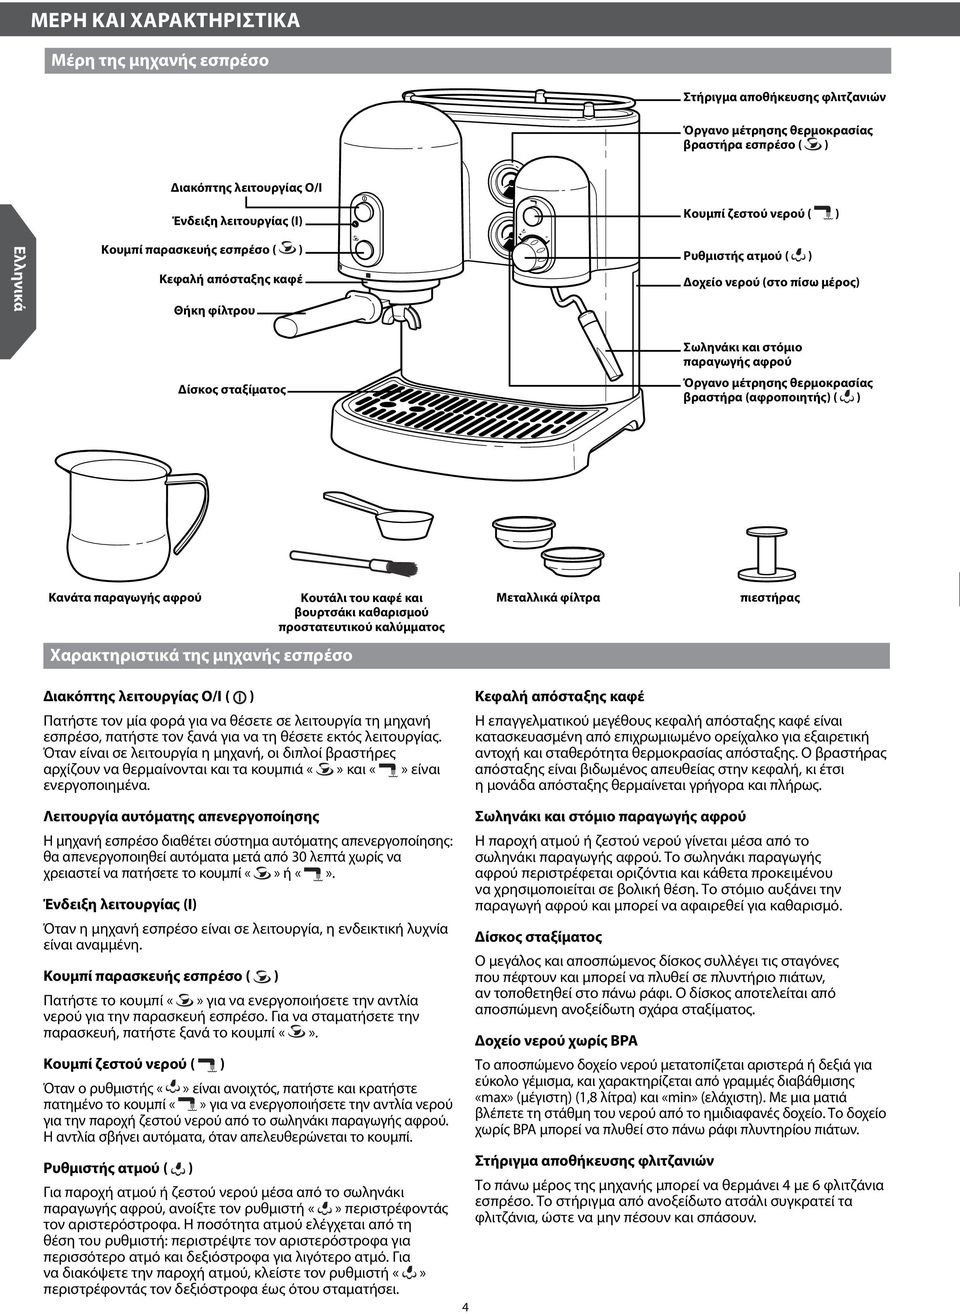 θερμοκρασίας βραστήρα (αφροποιητής) ( ) Κανάτα παραγωγής αφρού Χαρακτηριστικά της μηχανής εσπρέσο Κουτάλι του καφέ και βουρτσάκι καθαρισμού προστατευτικού καλύμματος Μεταλλικά φίλτρα πιεστήρας